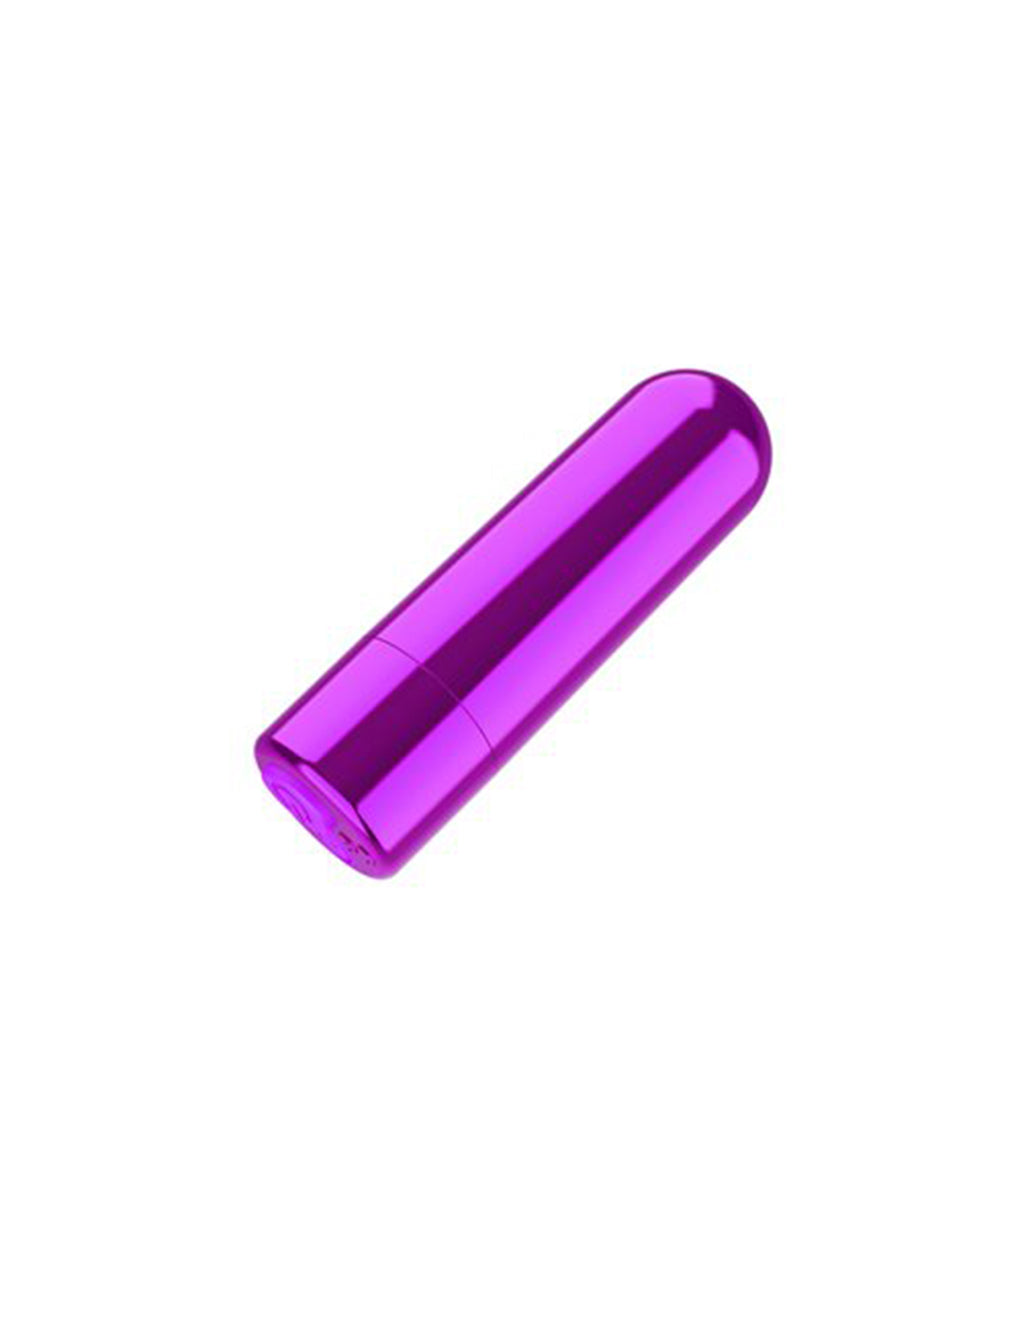 Naughty Nubbies- purple bullet